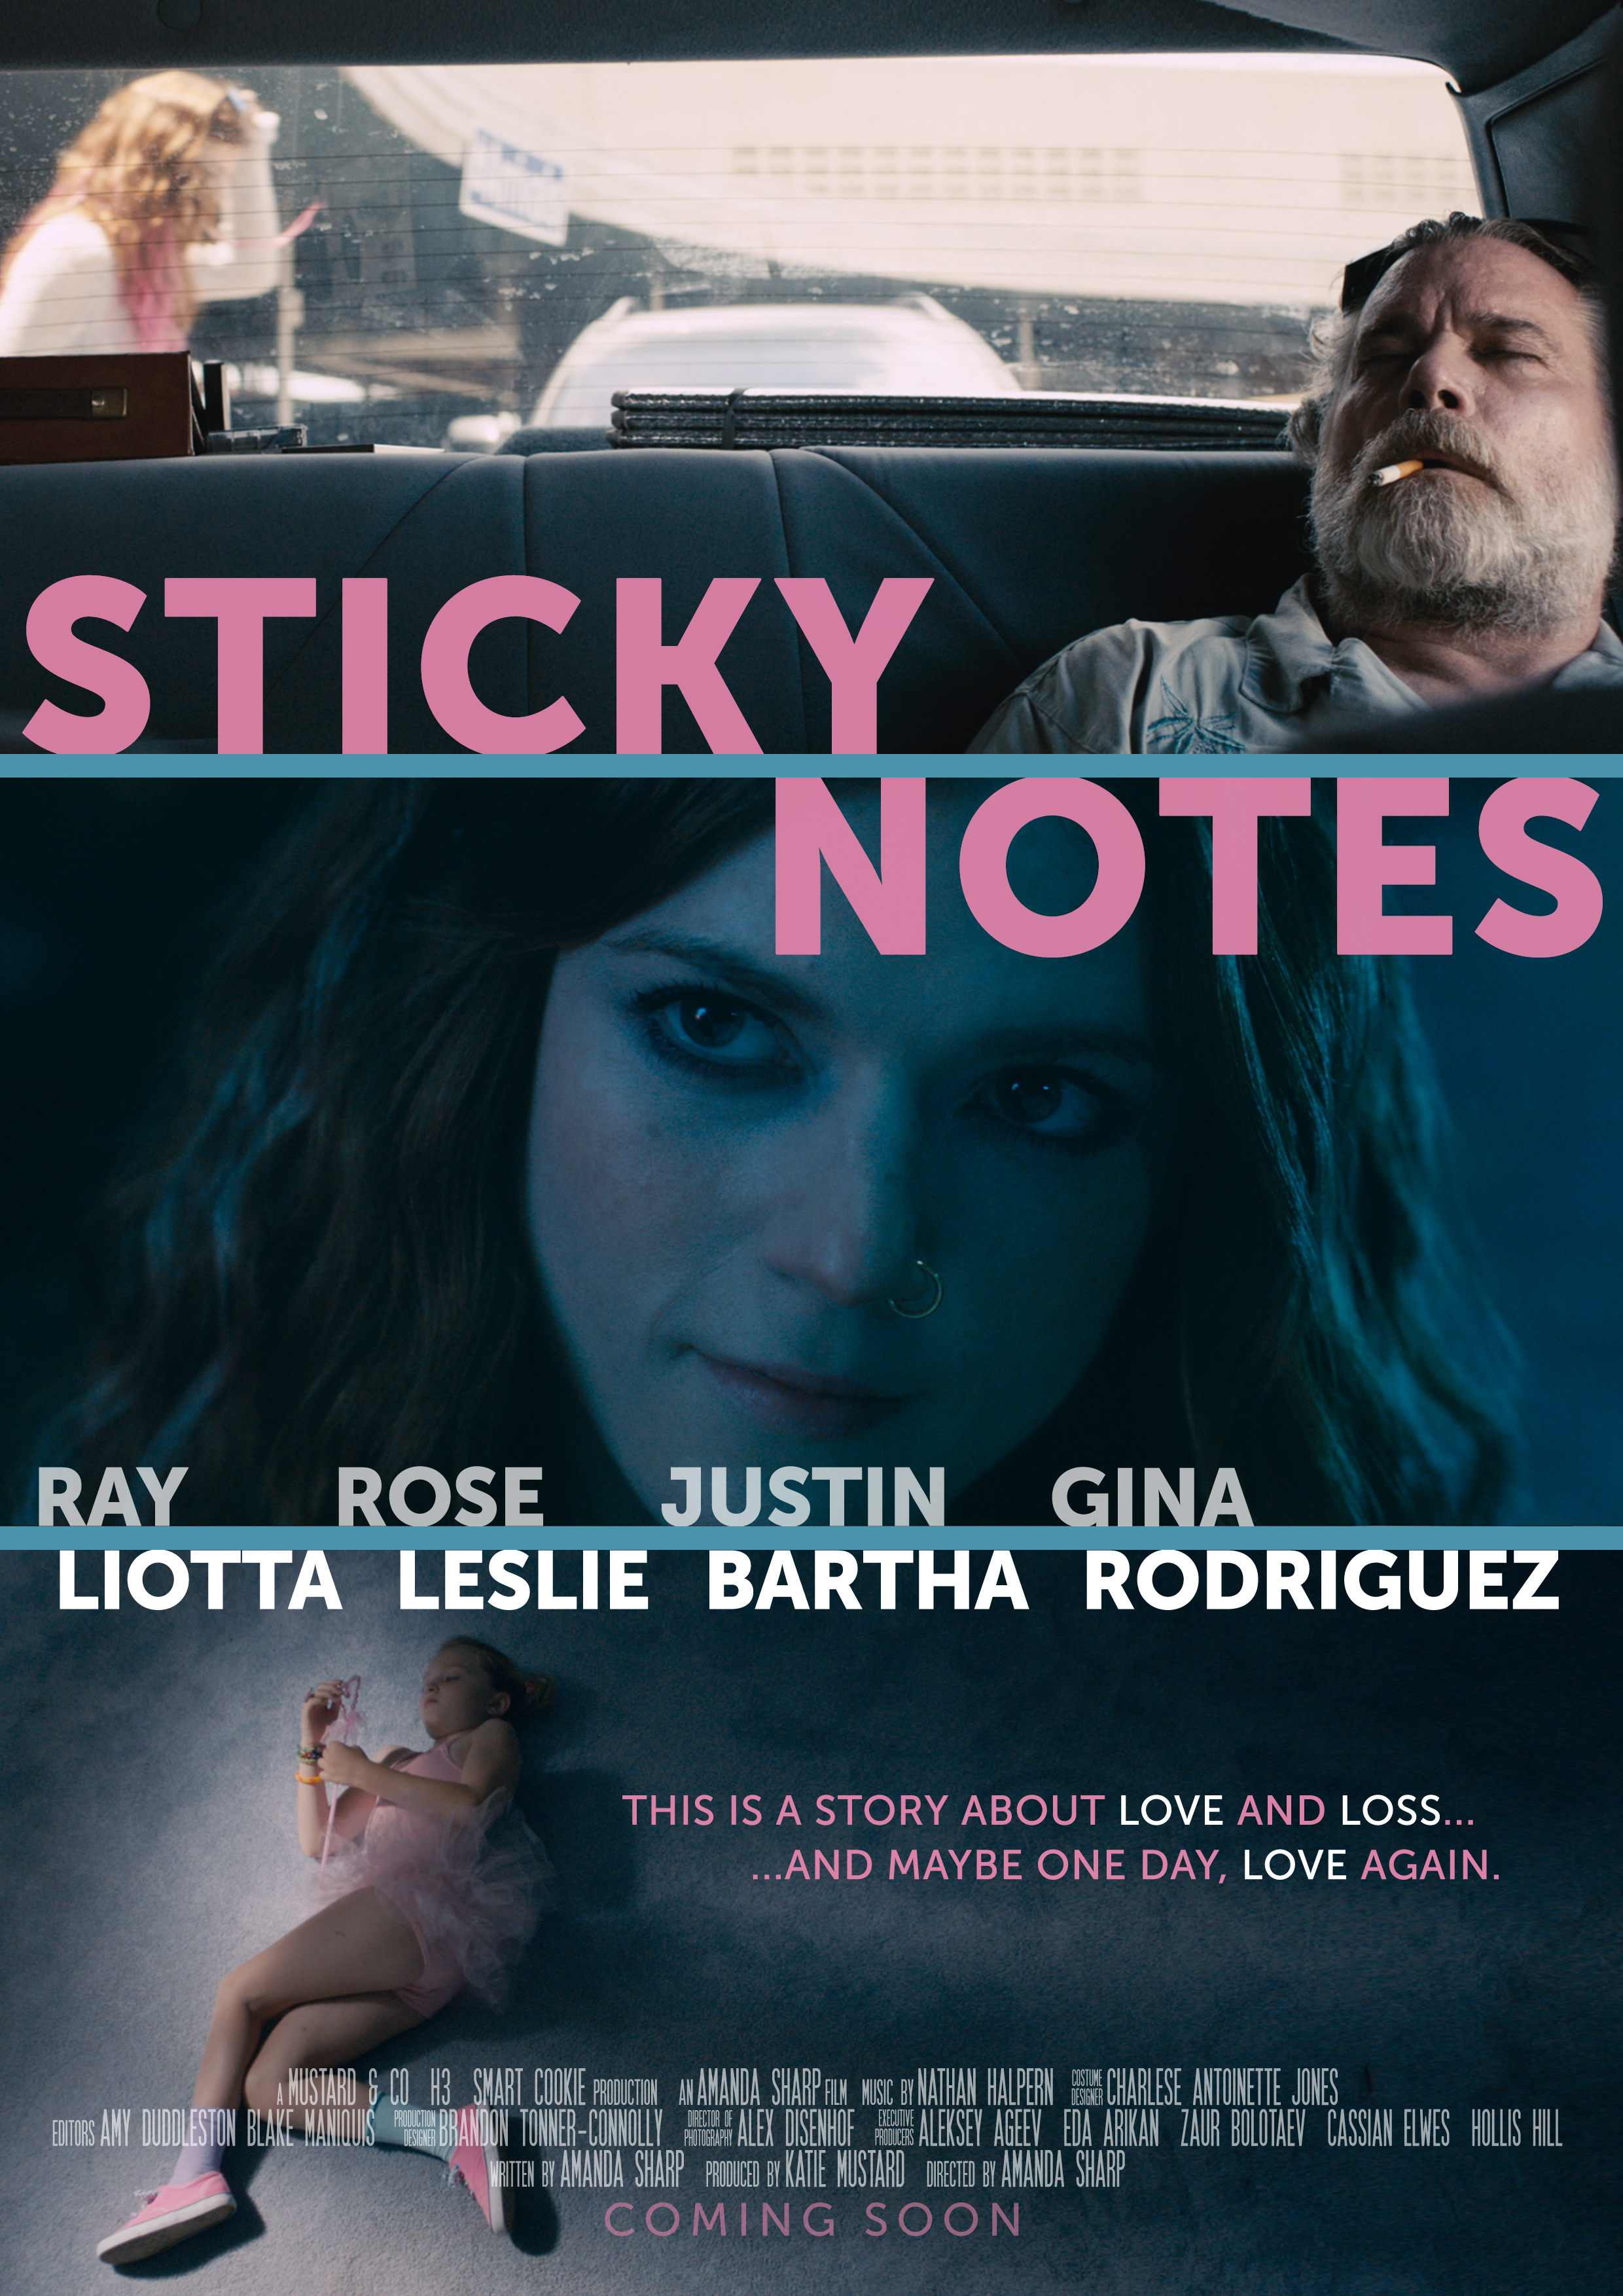 Nonton film Sticky Notes layarkaca21 indoxx1 ganool online streaming terbaru